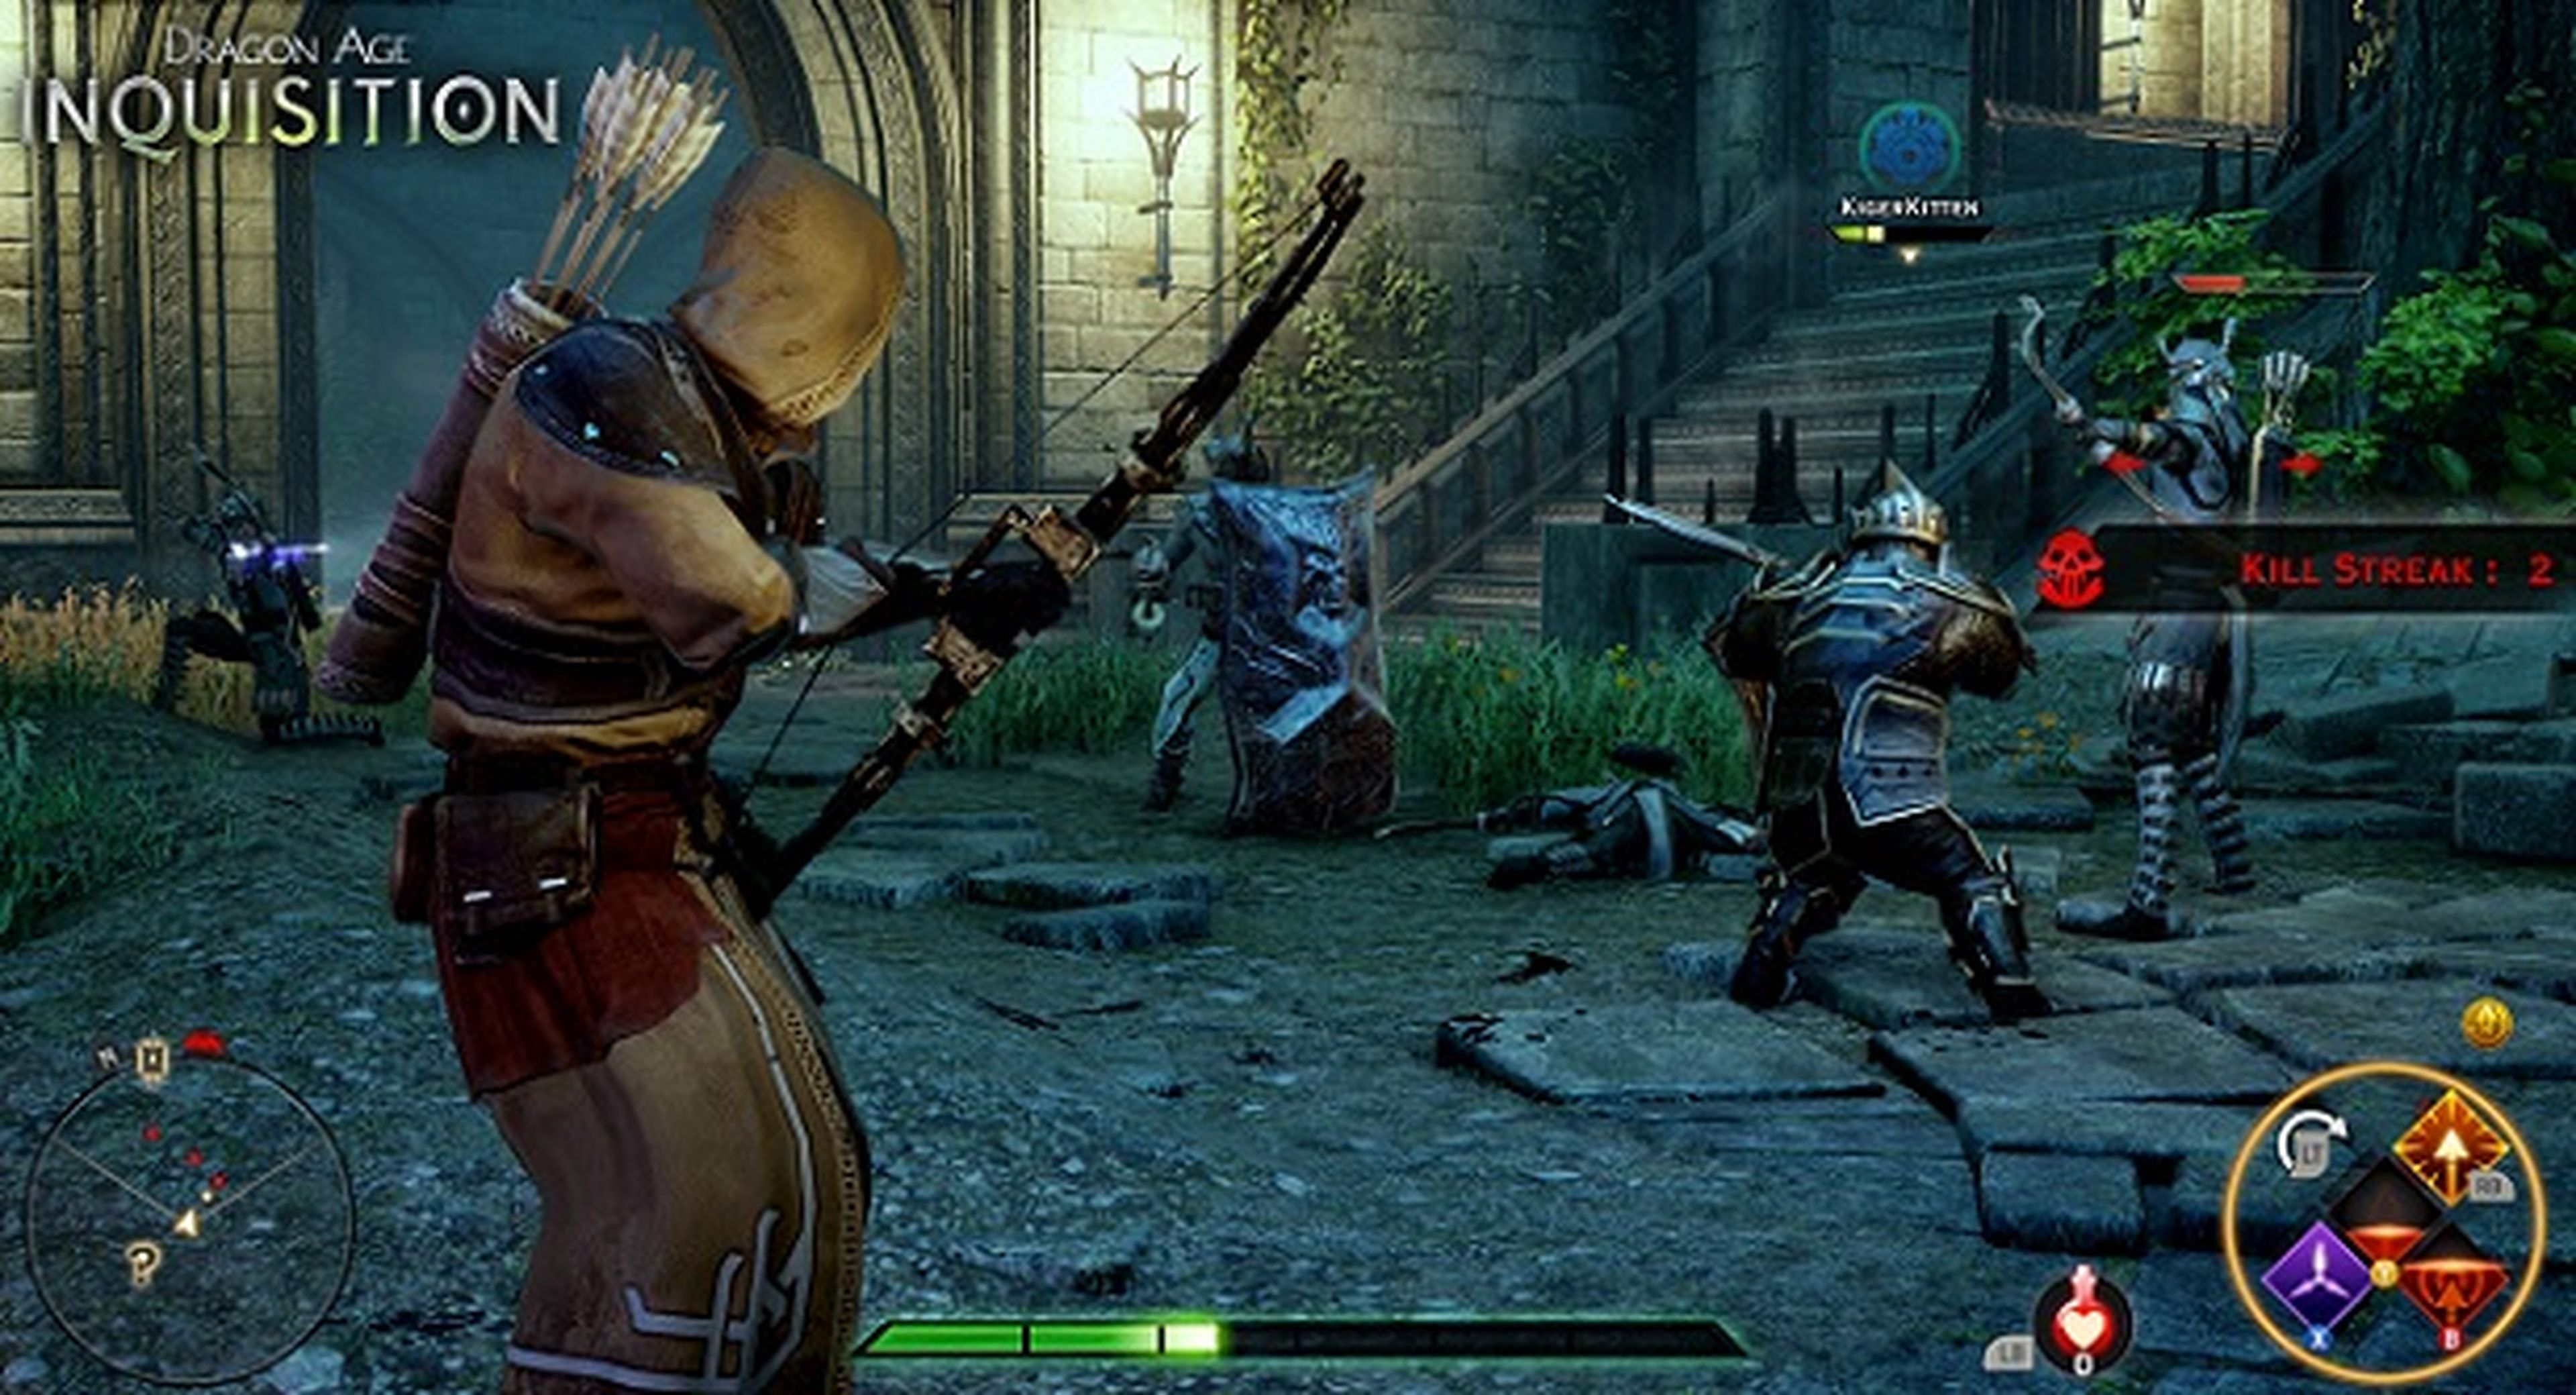 Dragon Age: Inquisition repetirá su evento multijugador